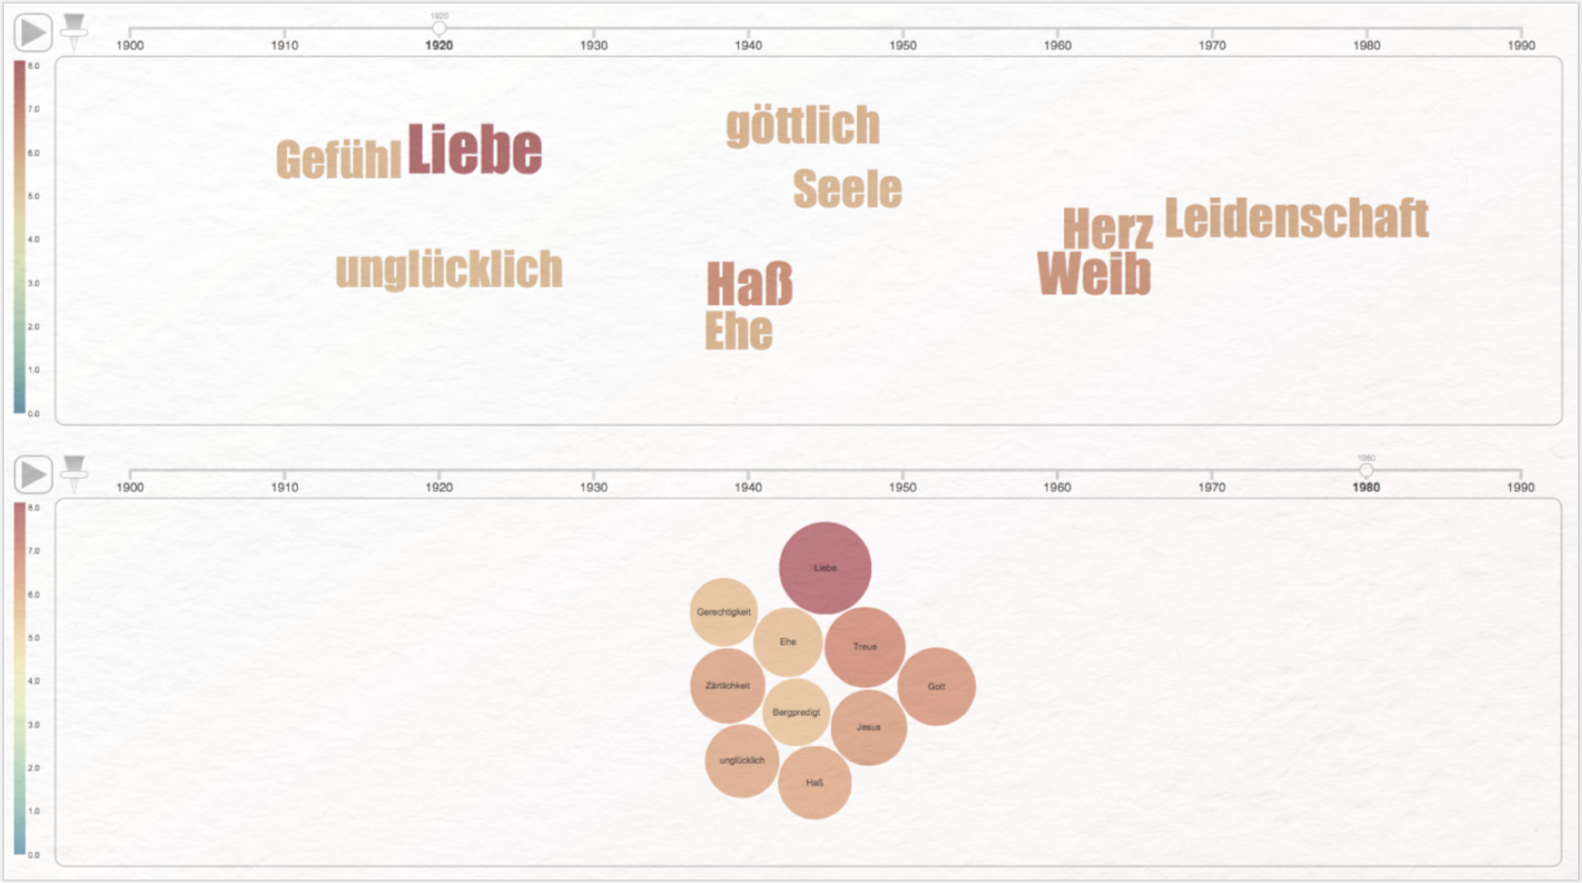 DWDS: Digitales Wörterbuch der Deutschen Sprache Kollokationsanalyse Liebe Wordcloud Bubble